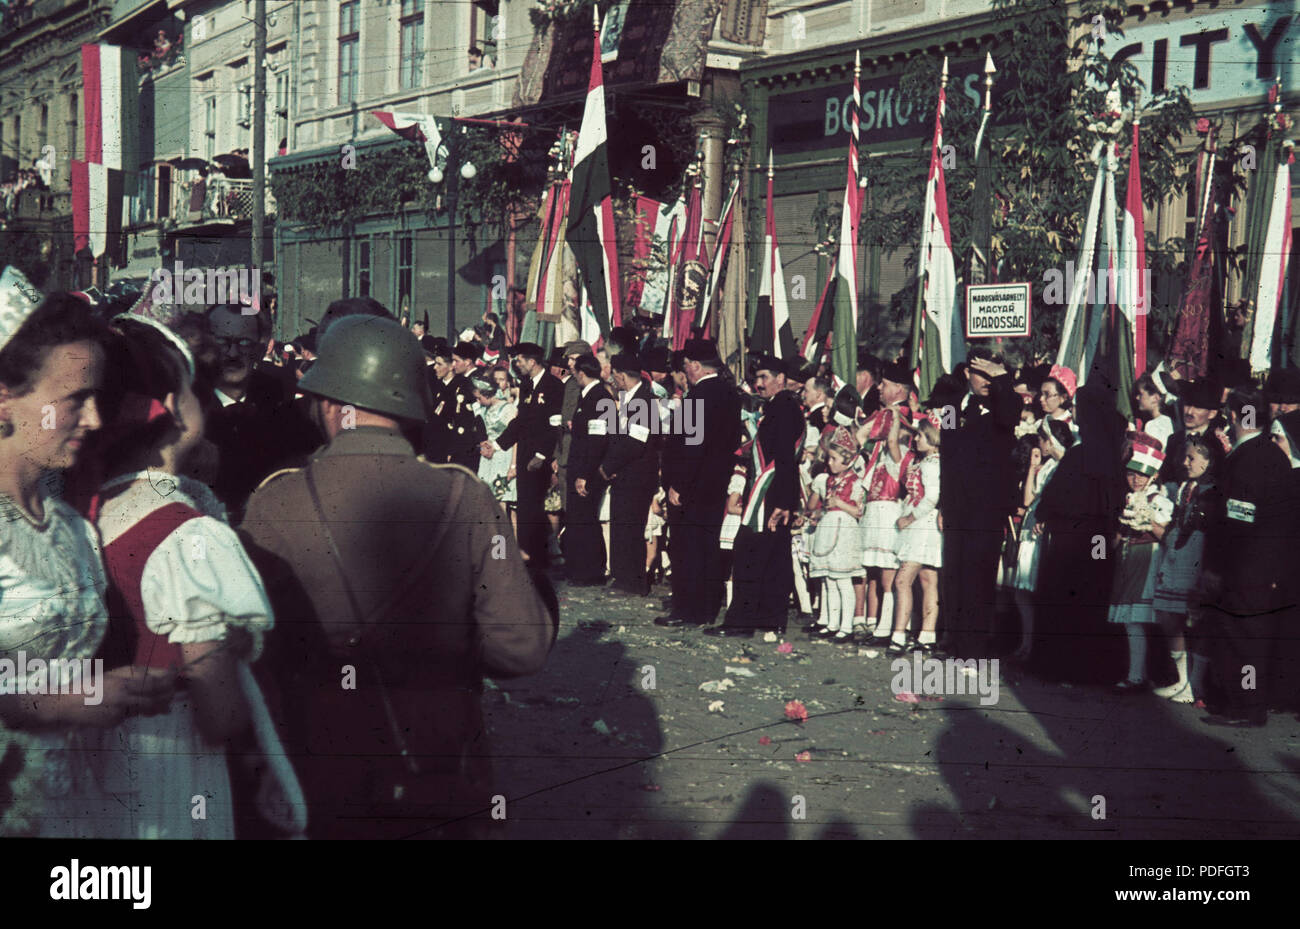 136 Fő tér (Piata Trandafirilor), ünneplők a Bolyai utca sarkánál álló ház előtt a magyar csapatok bevonulása idején. A felvétel 1940. szeptember 10-én készült. Fortepan 3958 Stock Photo